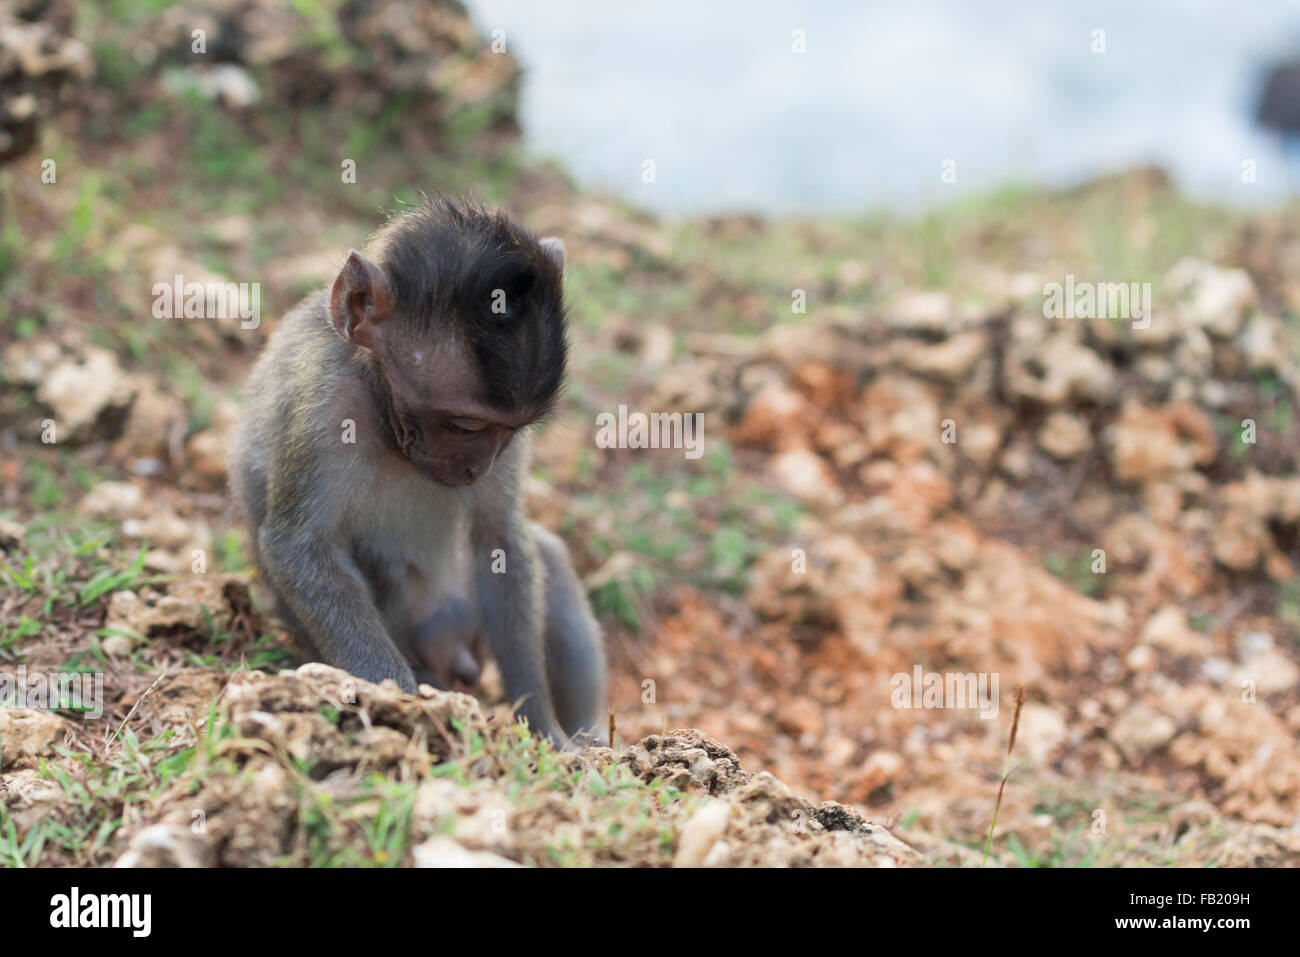 Escena de la fauna silvestre, mono bebé solo en su hábitat natural con la naturaleza de fondo. Foto de stock